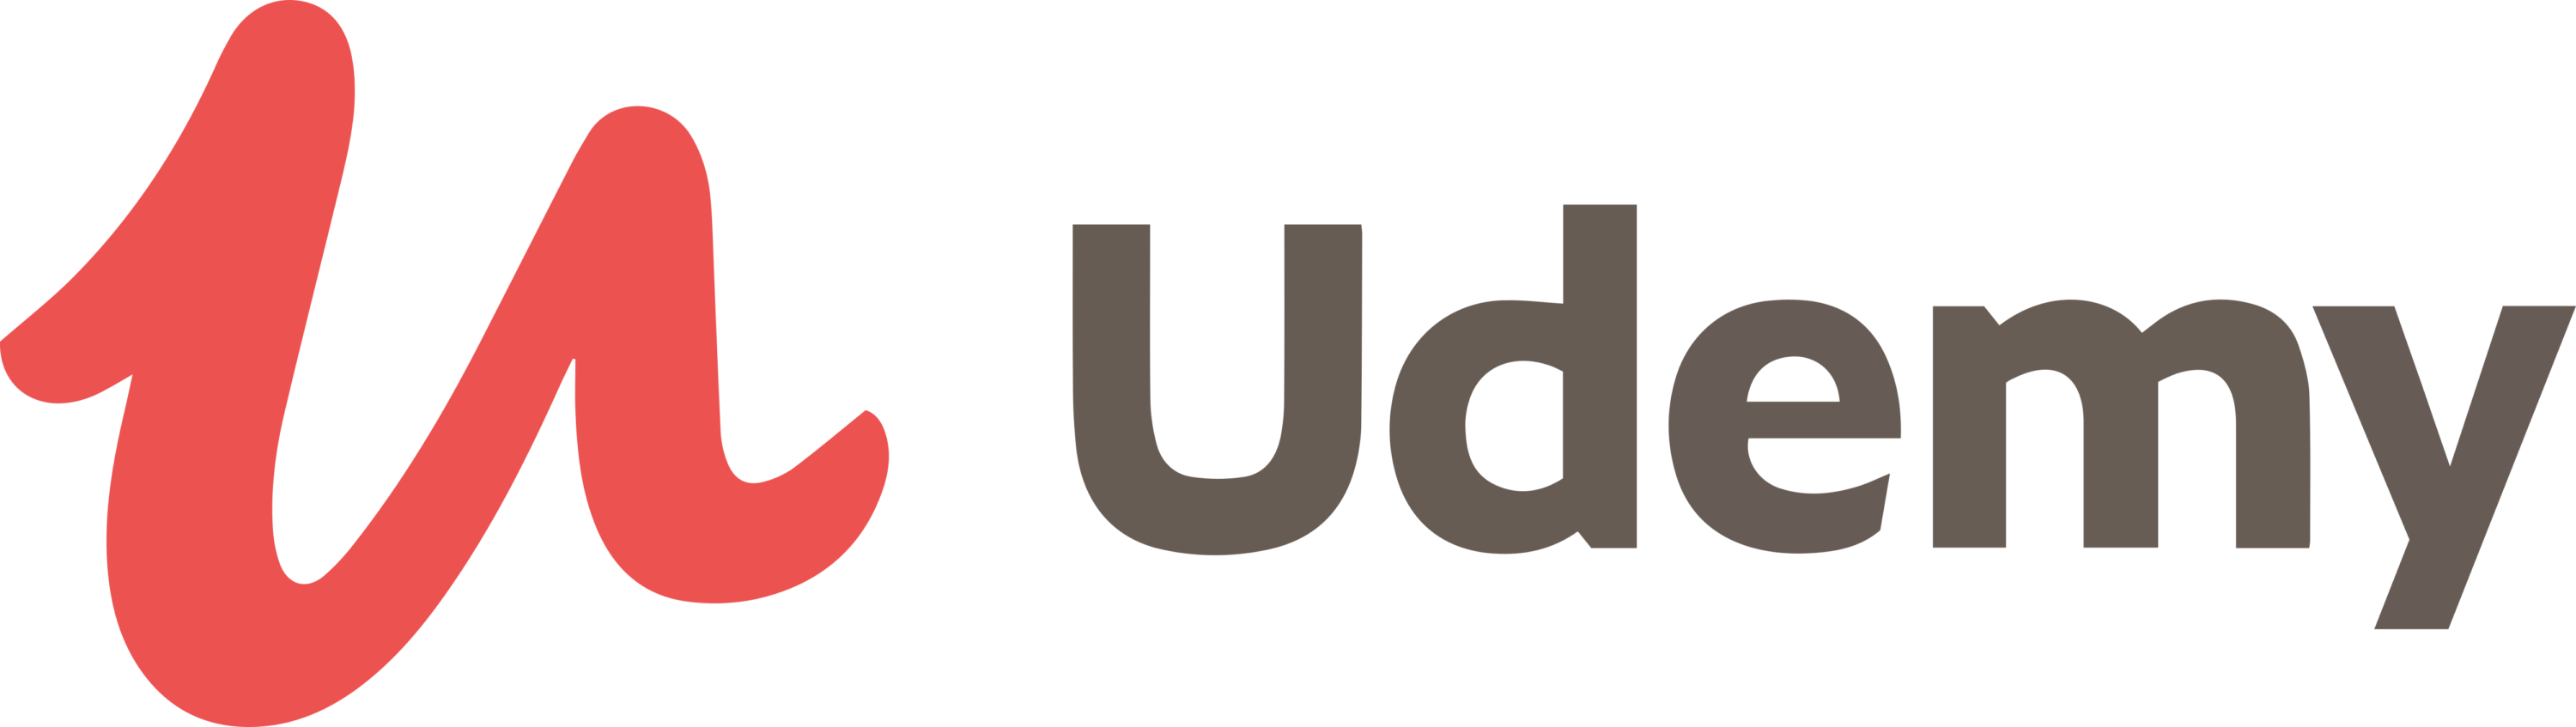 Udemy full Logo 2017